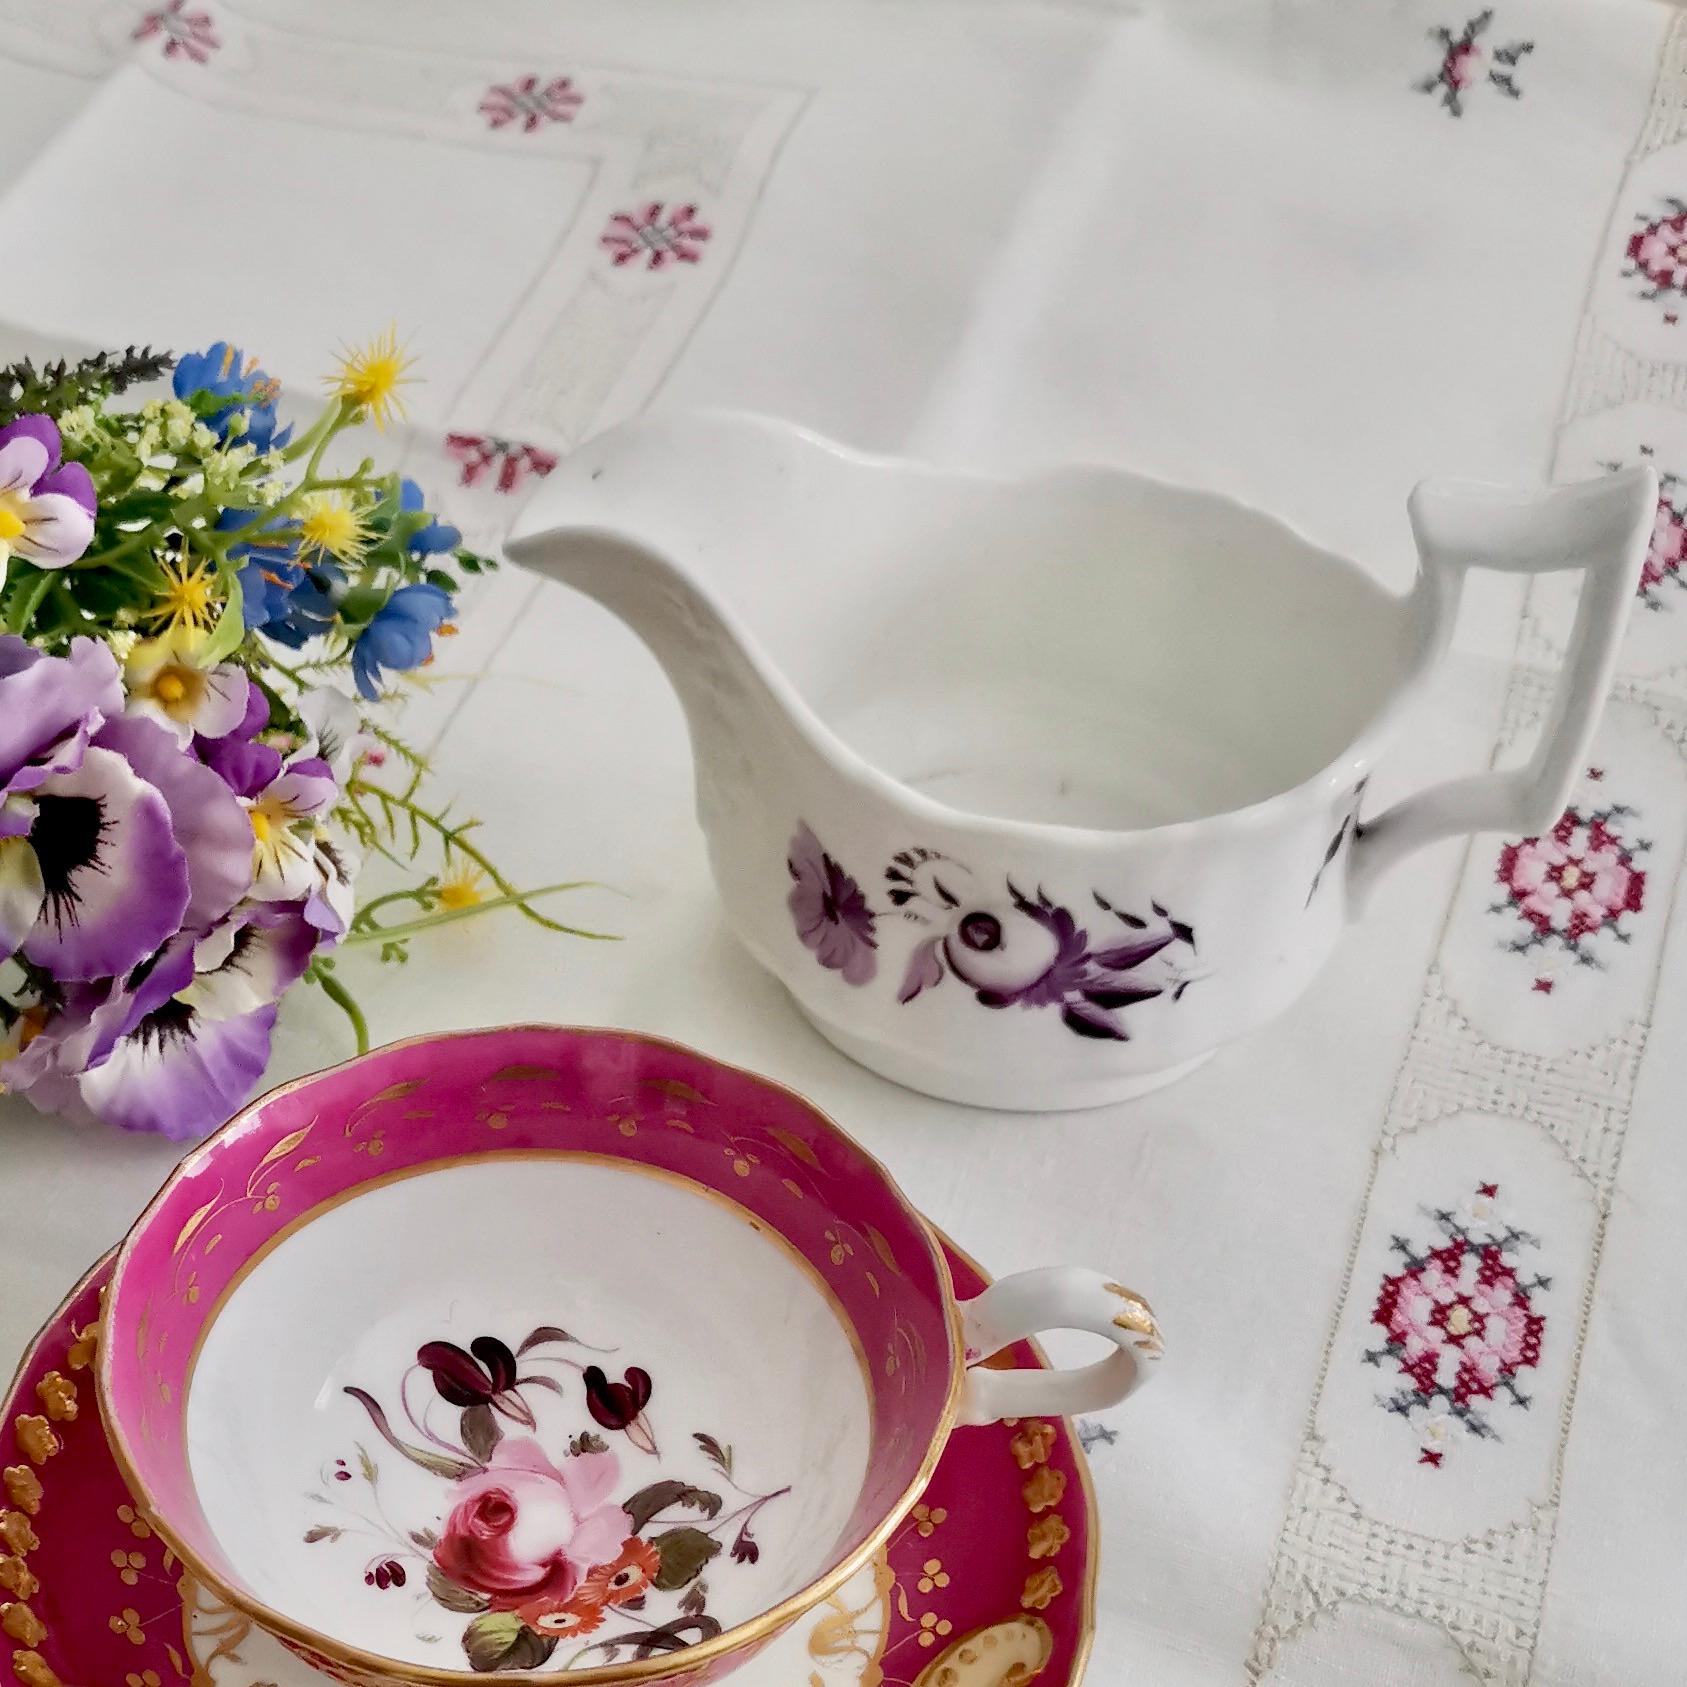 Il s'agit d'un charmant pot à lait ou crémier fabriqué vers 1825 par Ridgway. La cruche est décorée de simples fleurs monochromes de couleur puce / violette sur un fond blanc. La forme est typique de son époque et Ridgway l'a appelée la forme